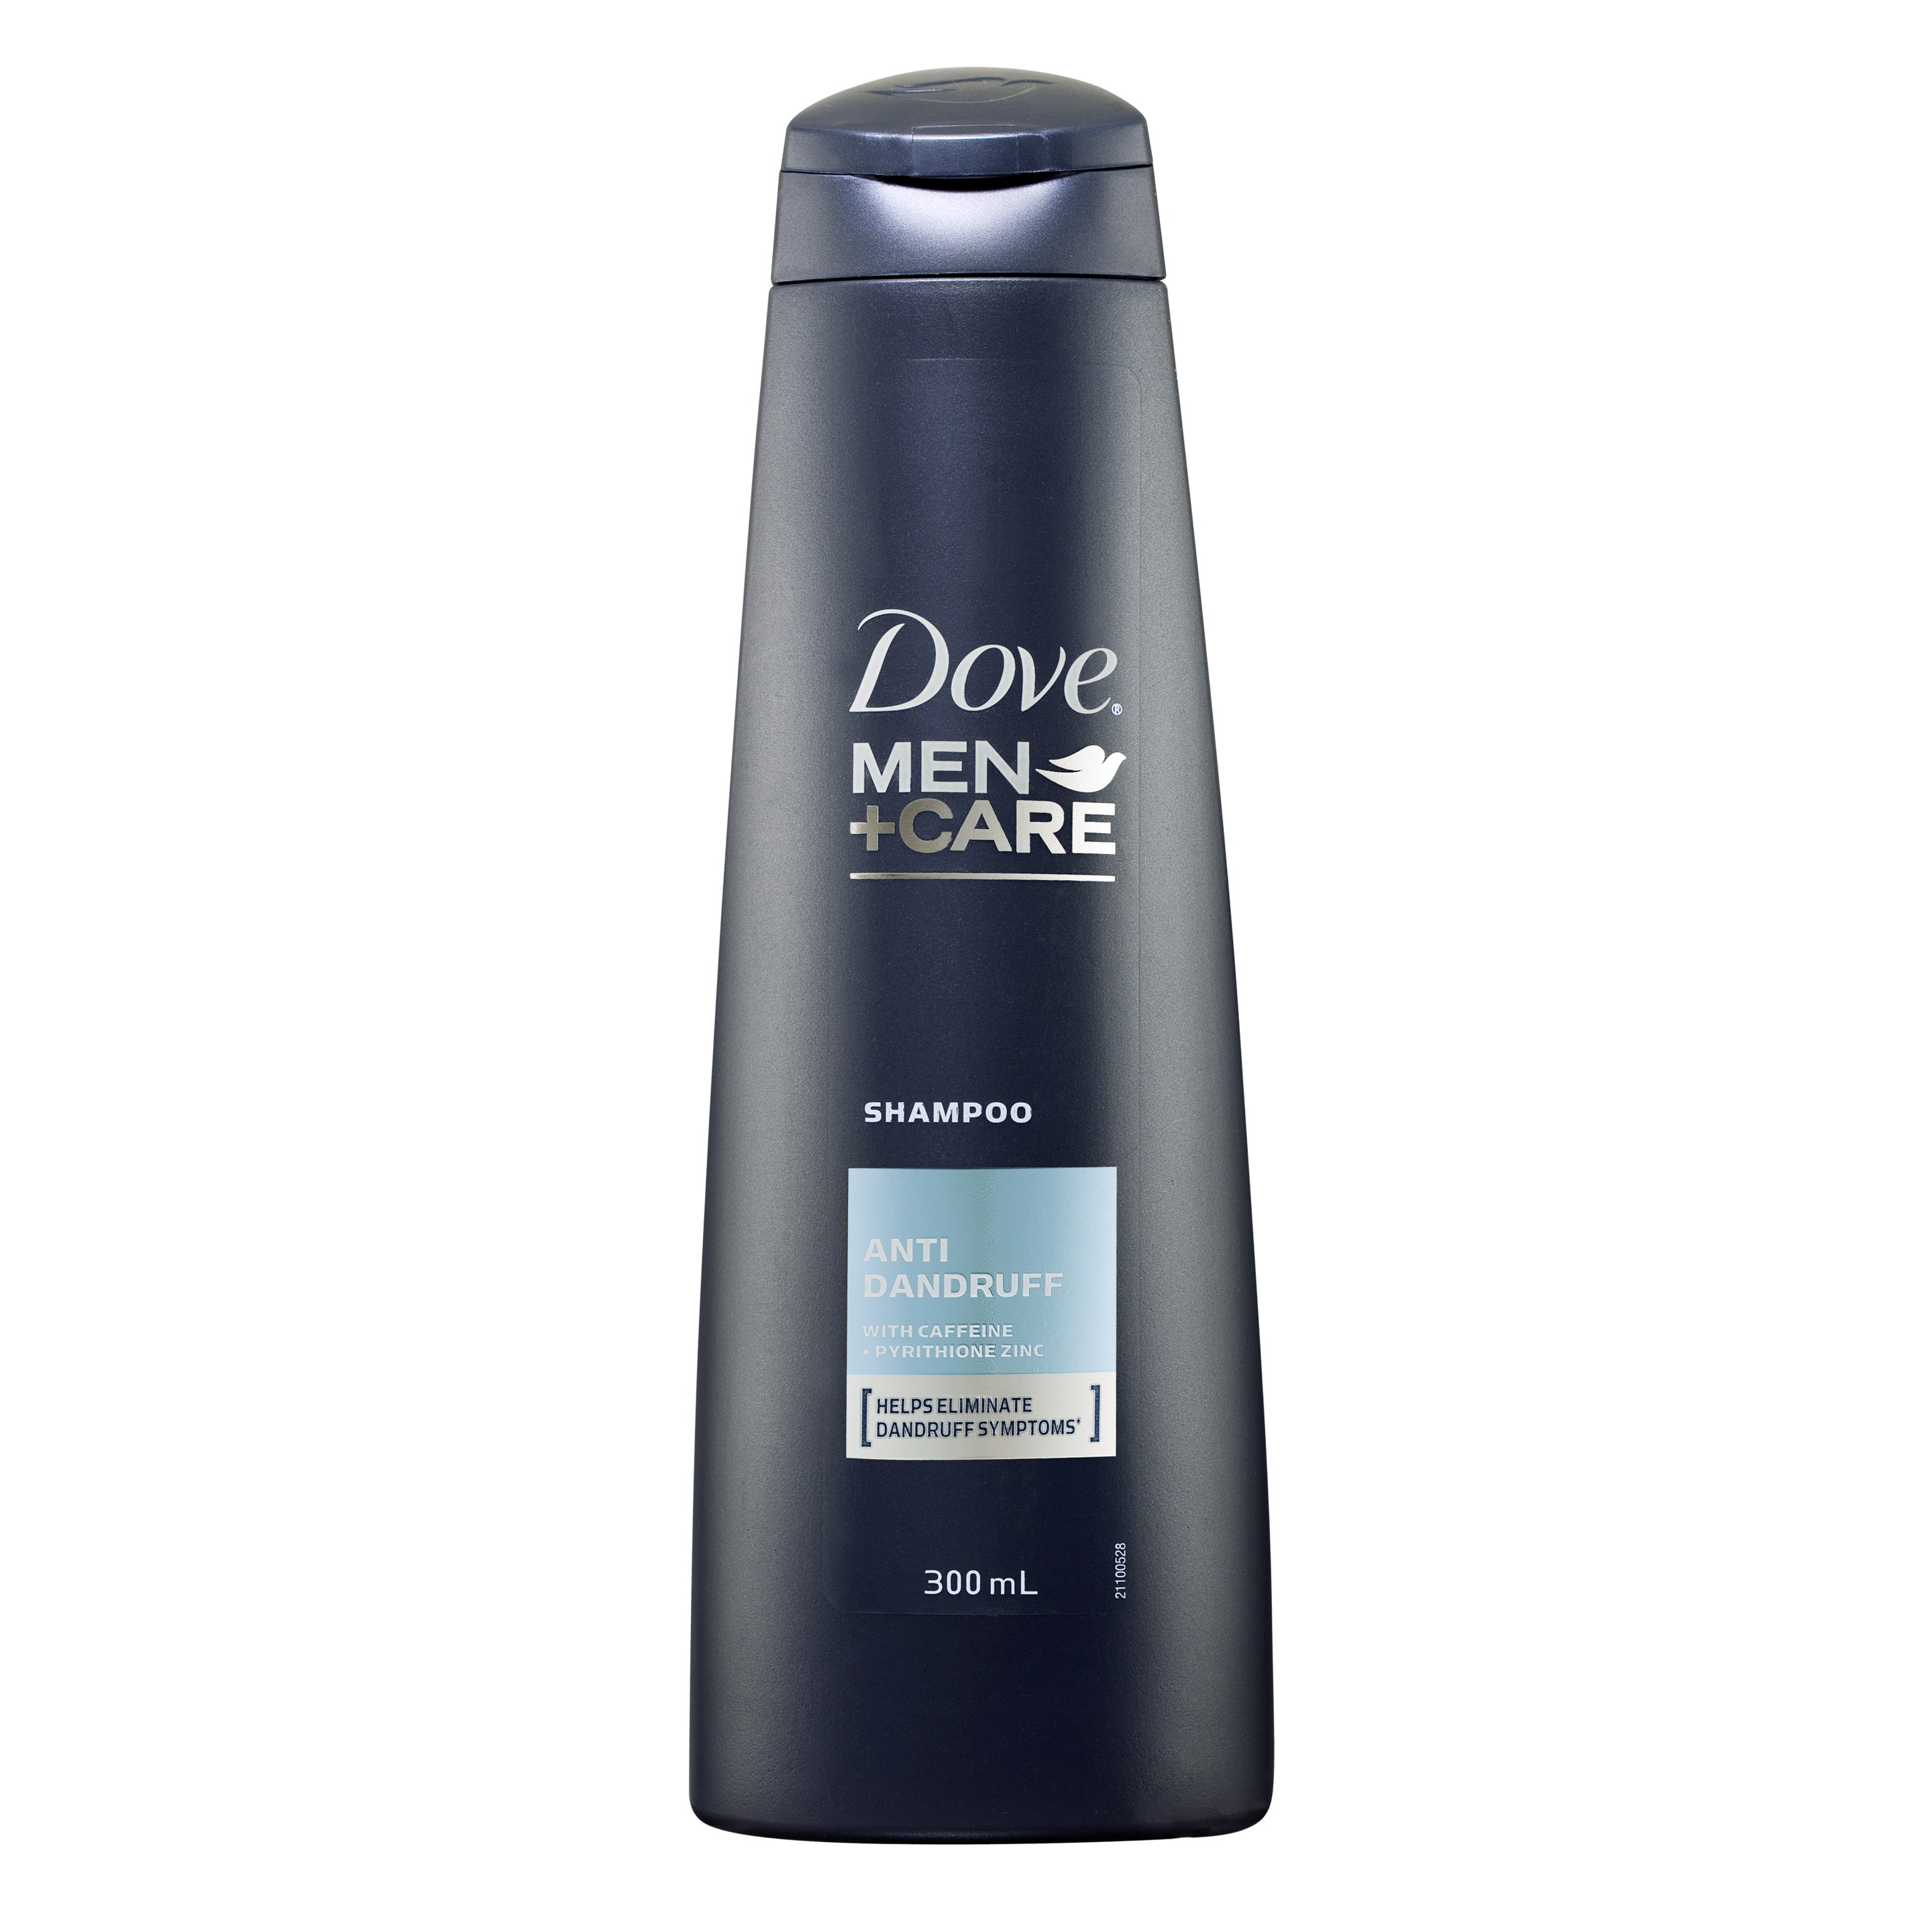 Dove Men+Care Anti Dandruff Shampoo 300ml